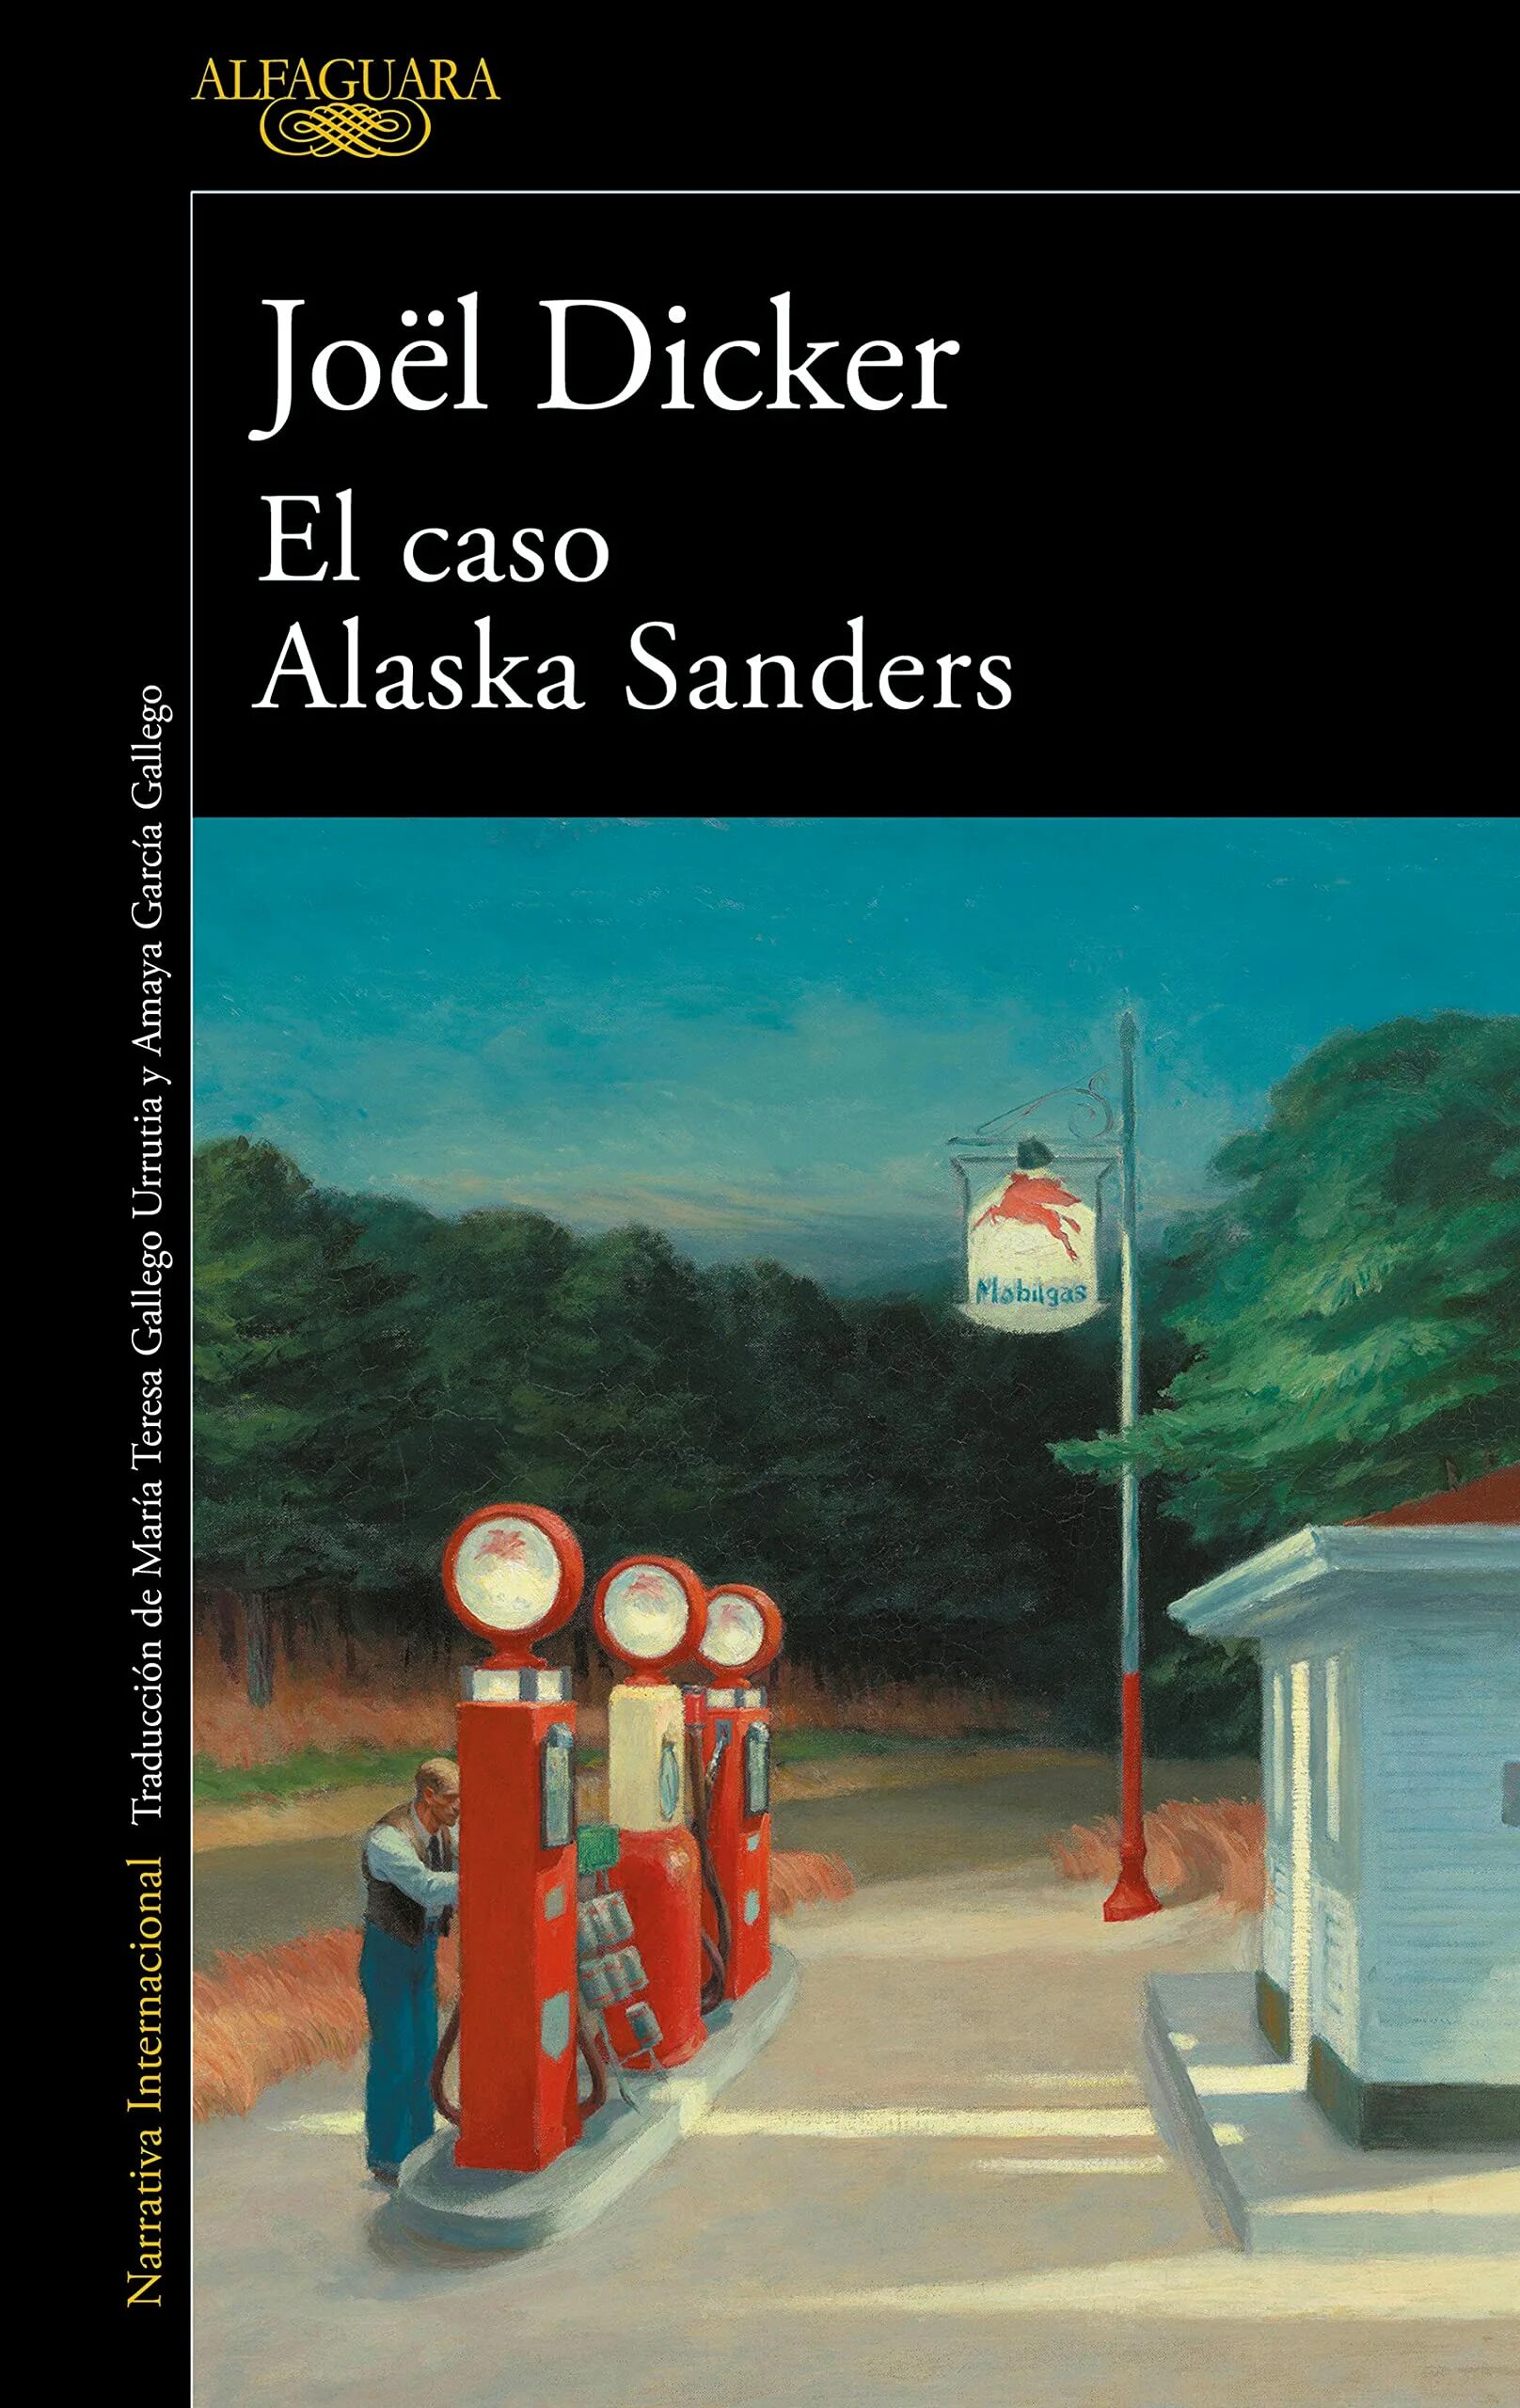 Жоэль диккер дело аляска. Жоэль Диккер Аляска Сандерс. Дело Аляски Сандерс. “The Case of Alaska Sanders” by Joël dicker Cover. “The Case of Alaska Sanders” by Joël dicker.